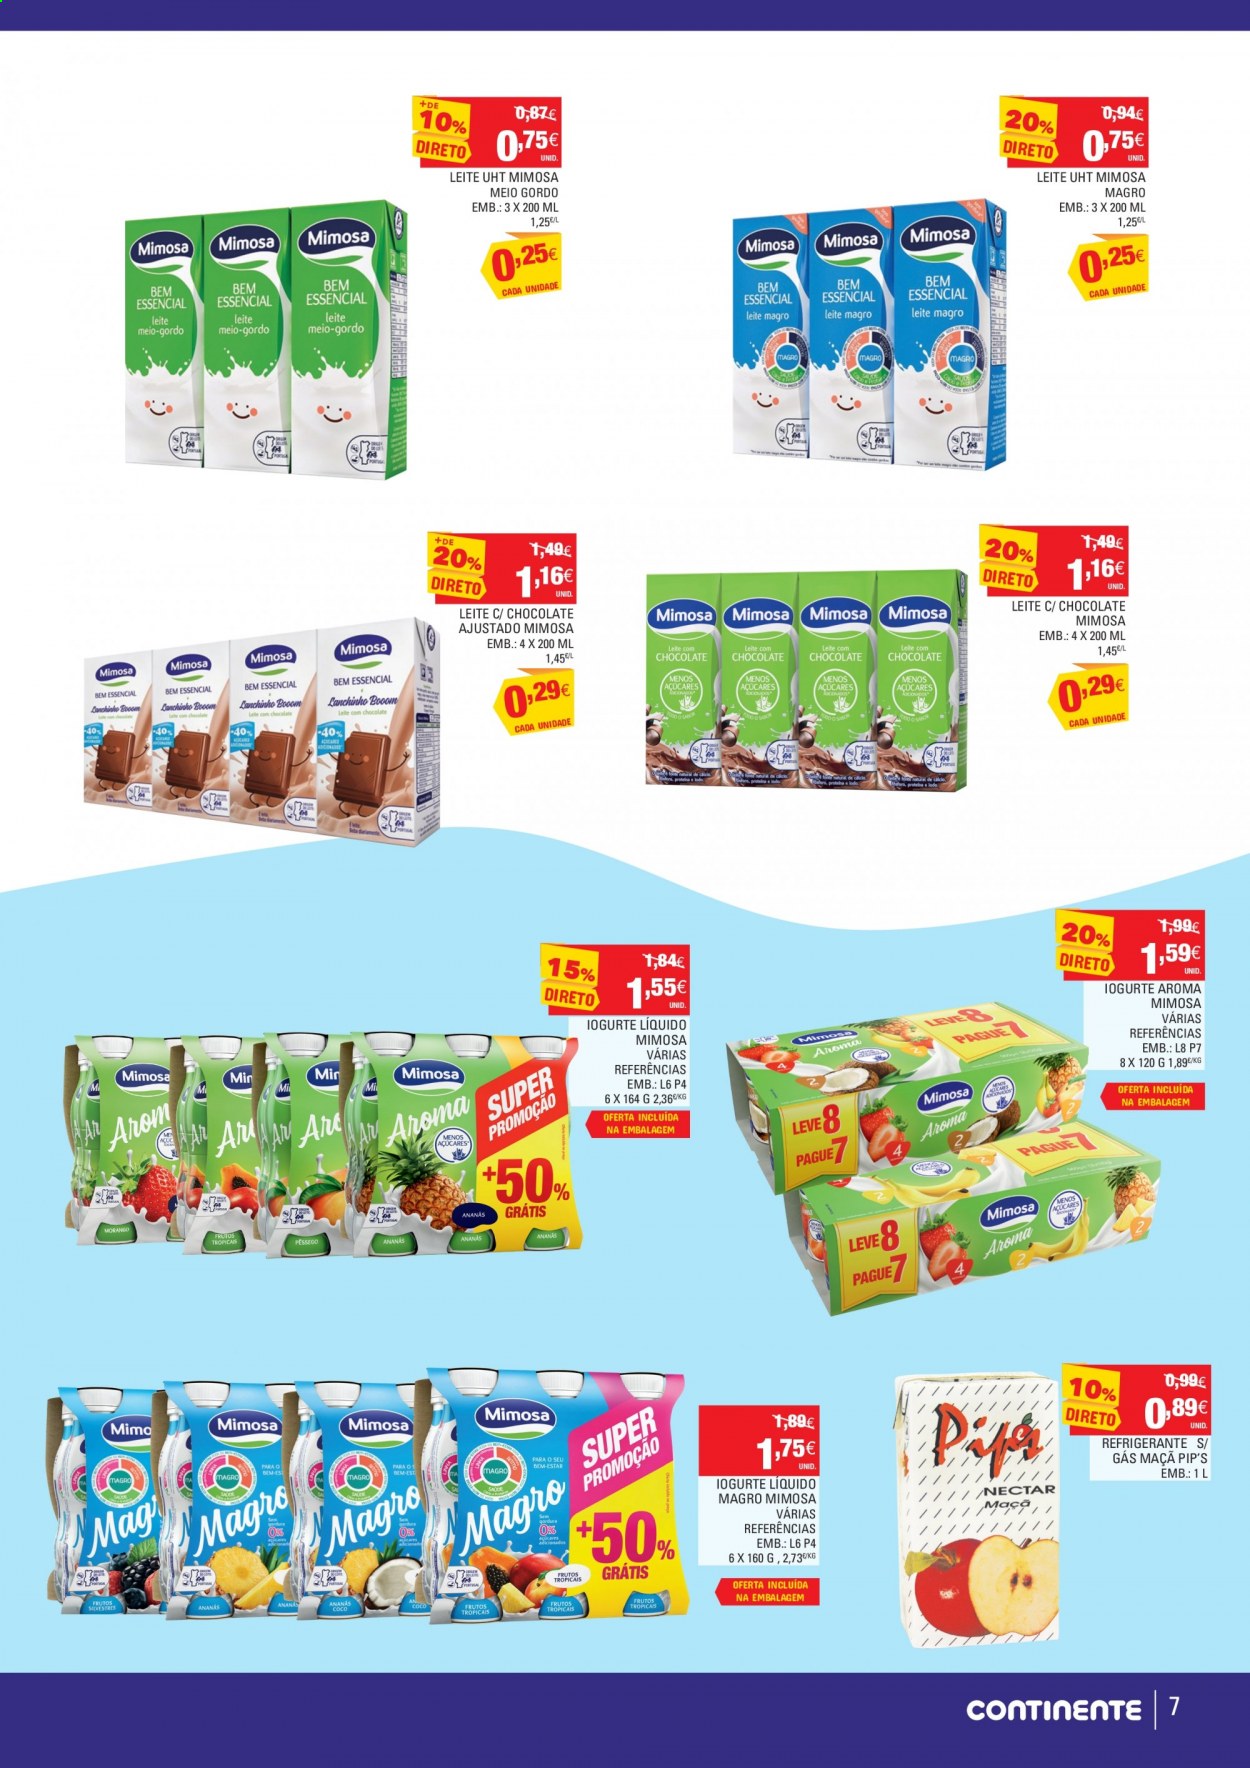 thumbnail - Folheto Continente Modelo - 3.6.2021 - 16.6.2021 - Produtos em promoção - maçã, iogurte, iogurte líquido, Mimosa, leite, refrigerante. Página 7.